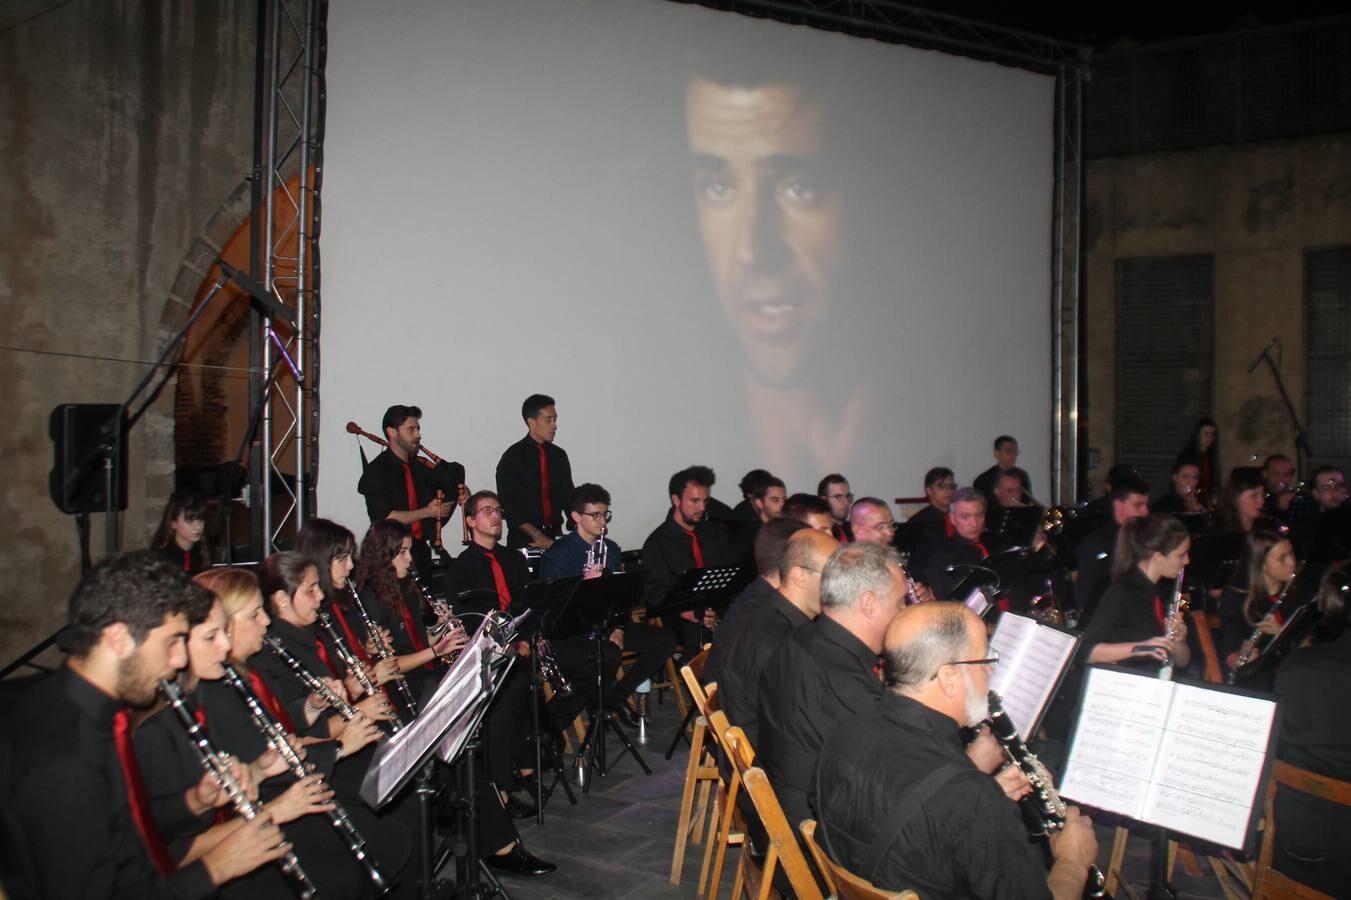 Magnífico concierto 'Los Óscar' a cargo de la Asociación Musical de Jerez